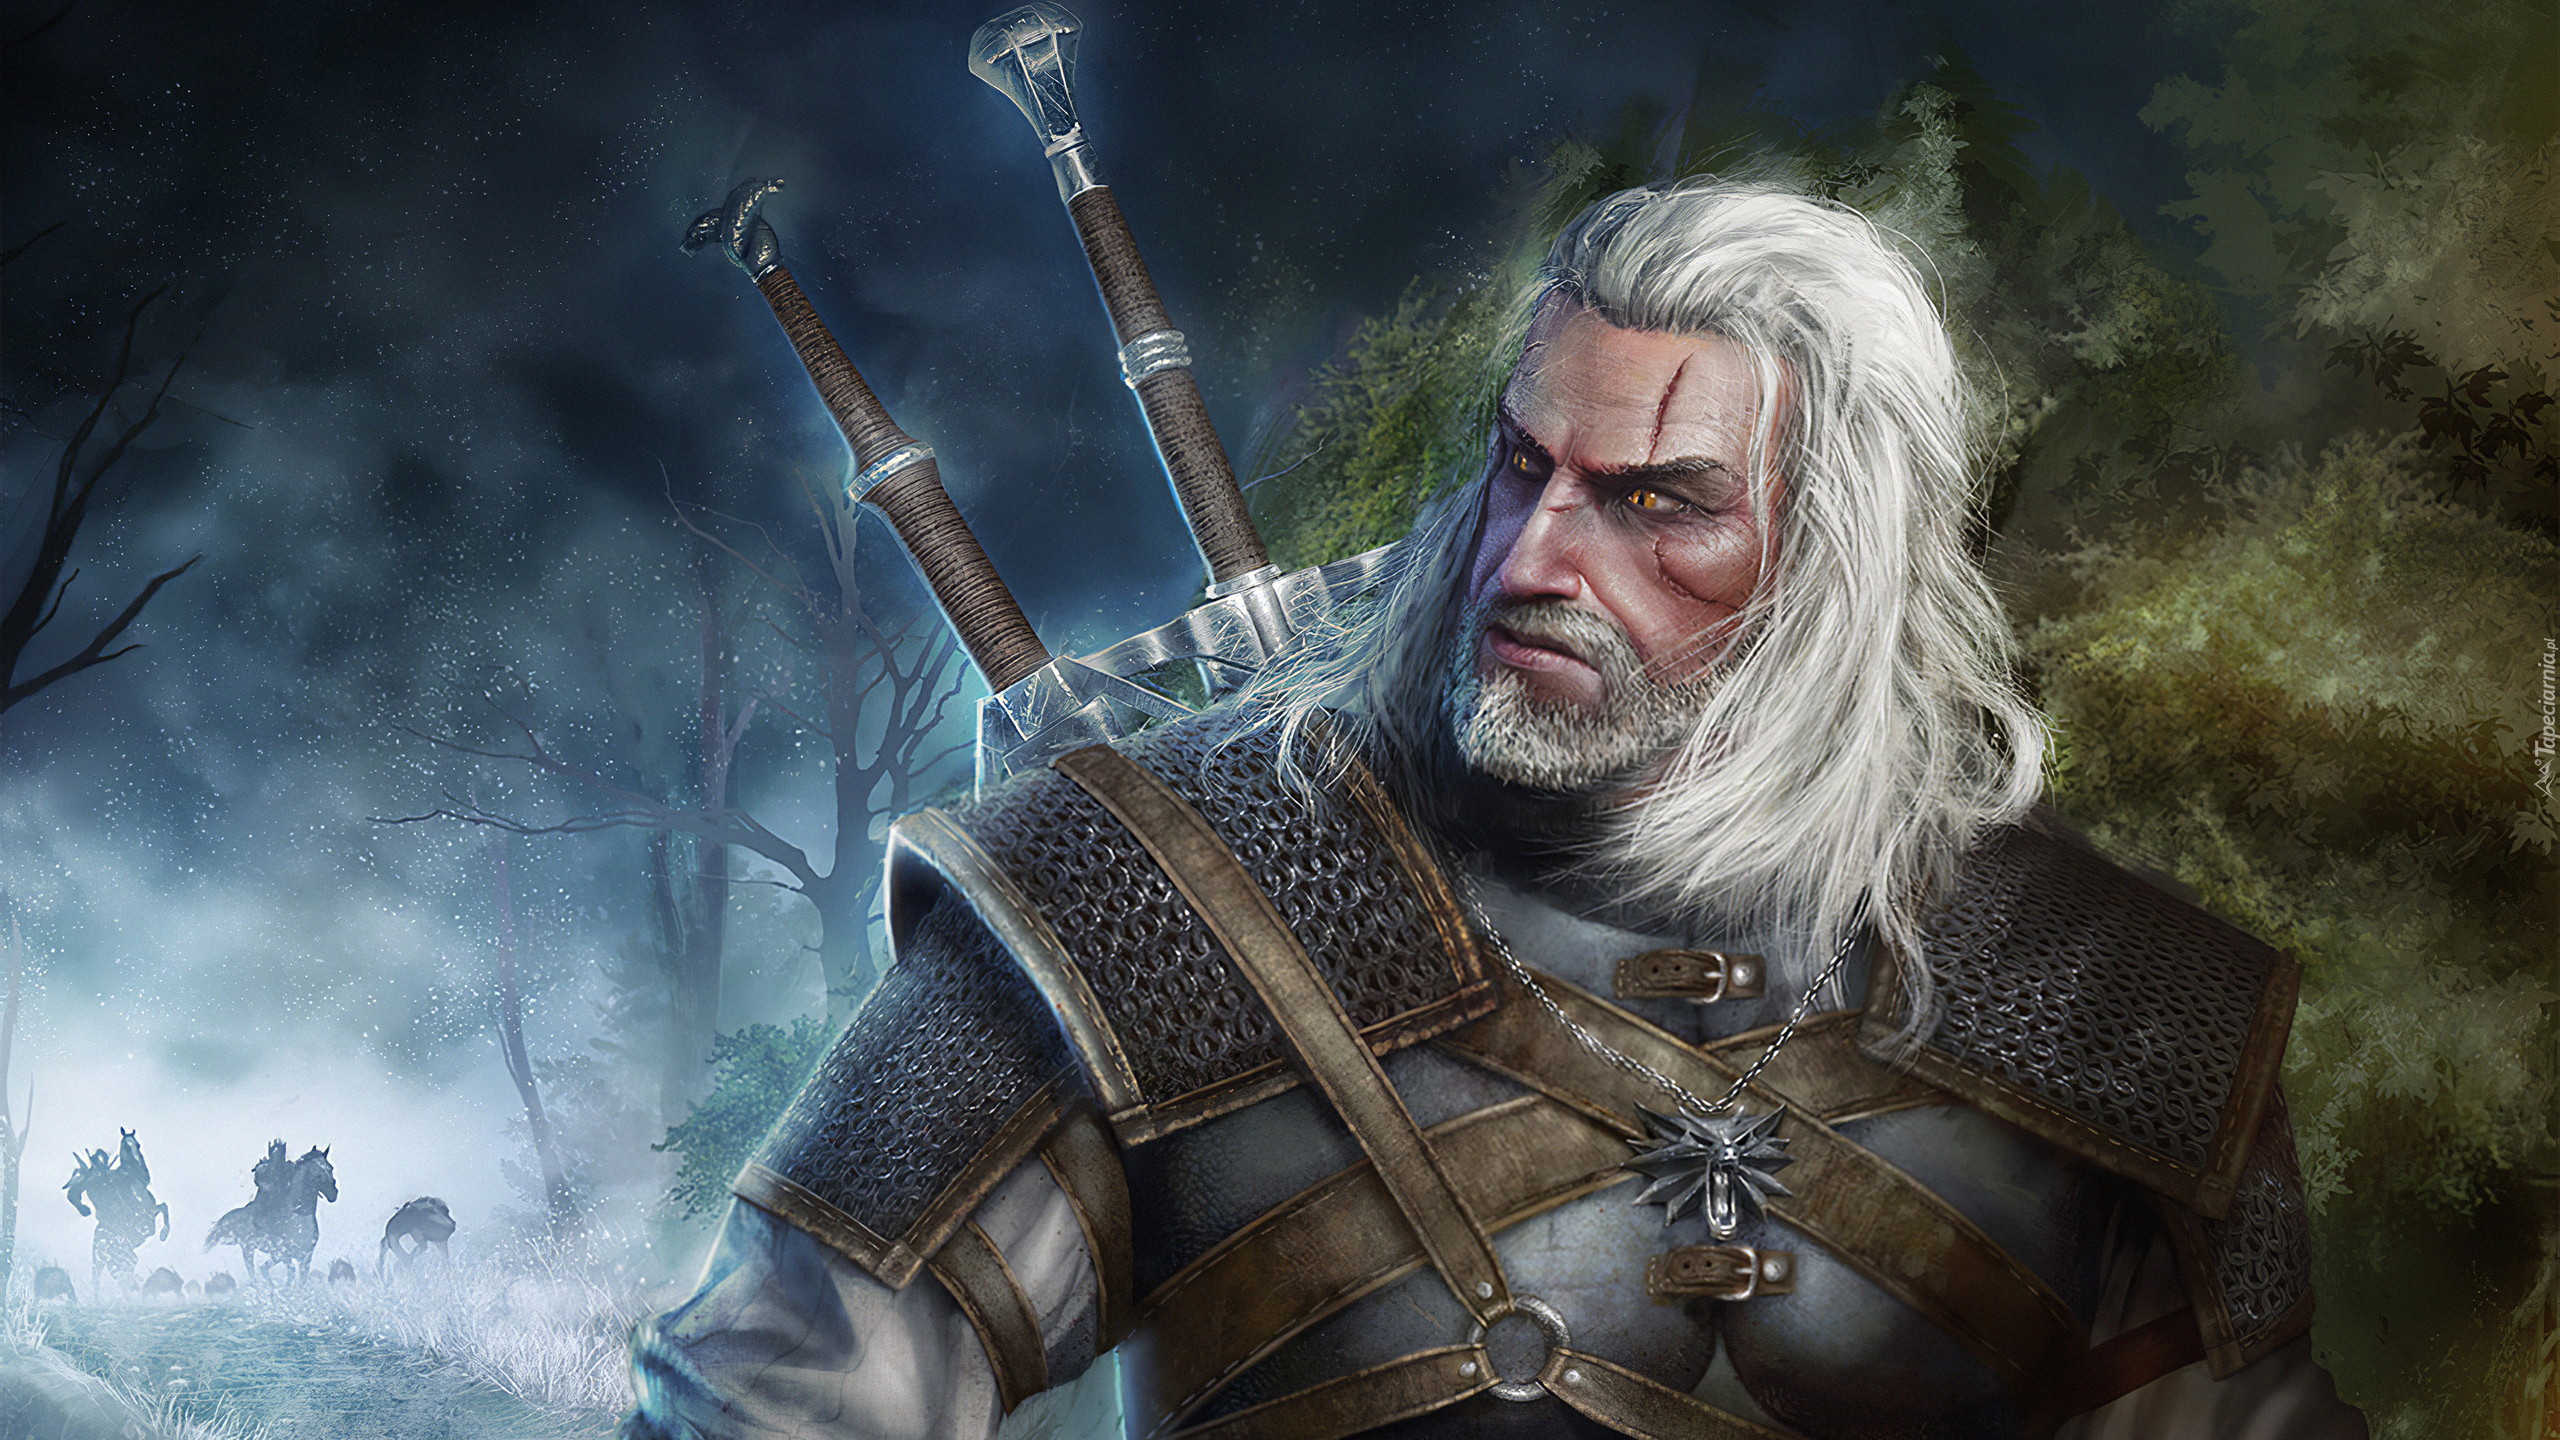 Gra, Geralt z Rivii, Wiedźmin 3 Dziki Gon, The Witcher 3 Wild Hunt